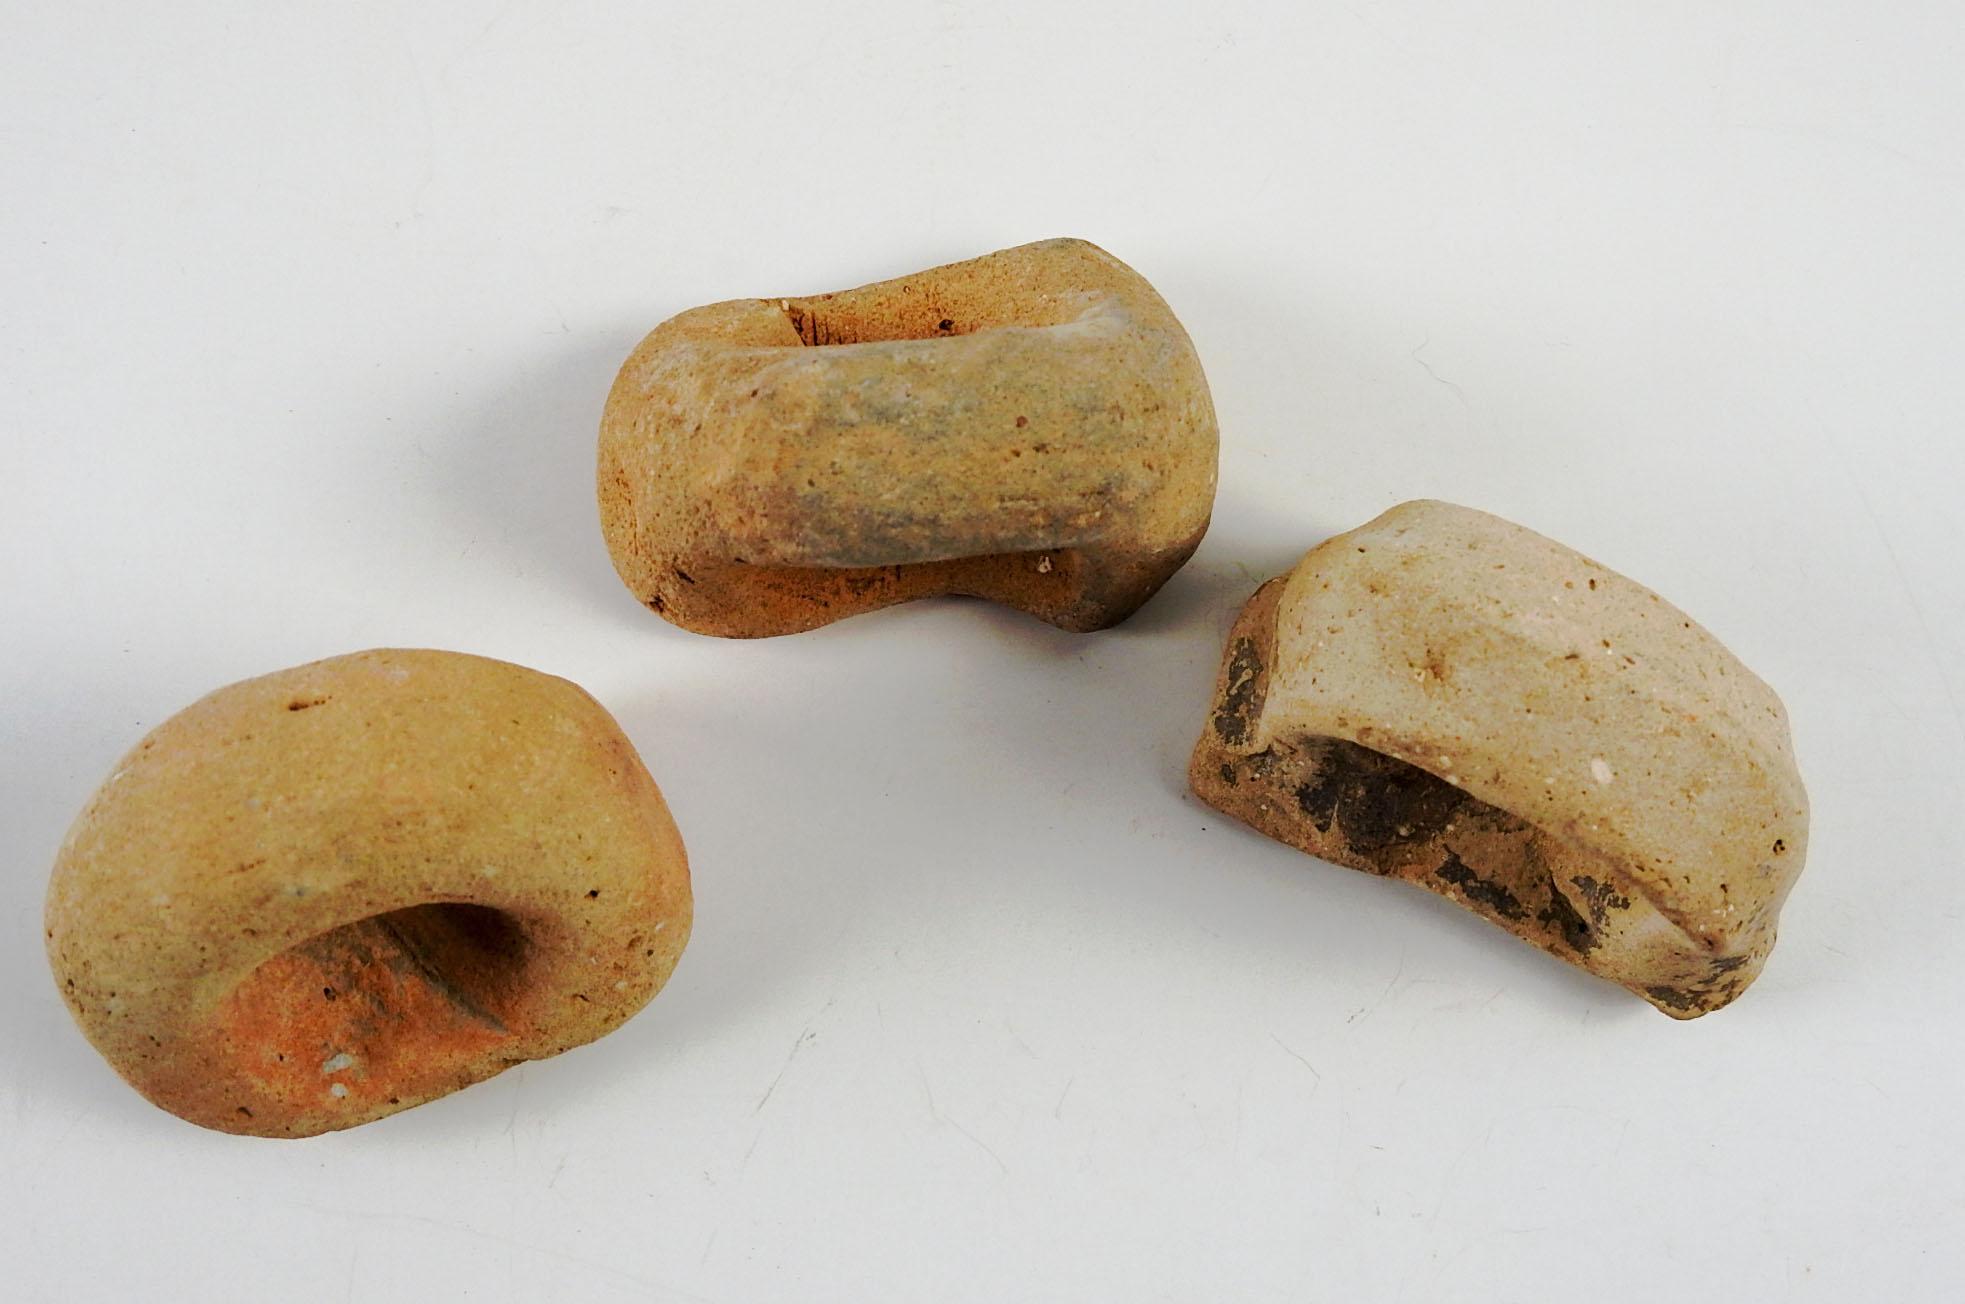 Groupe de 3 fragments d'anses de poterie en terre cuite de la Méditerranée antique . J'ai plusieurs ensembles de ces, les couleurs varient de brunâtre à rougeâtre, la taille et l'usure globale variera. Le plus grand fragment mesure environ 2 